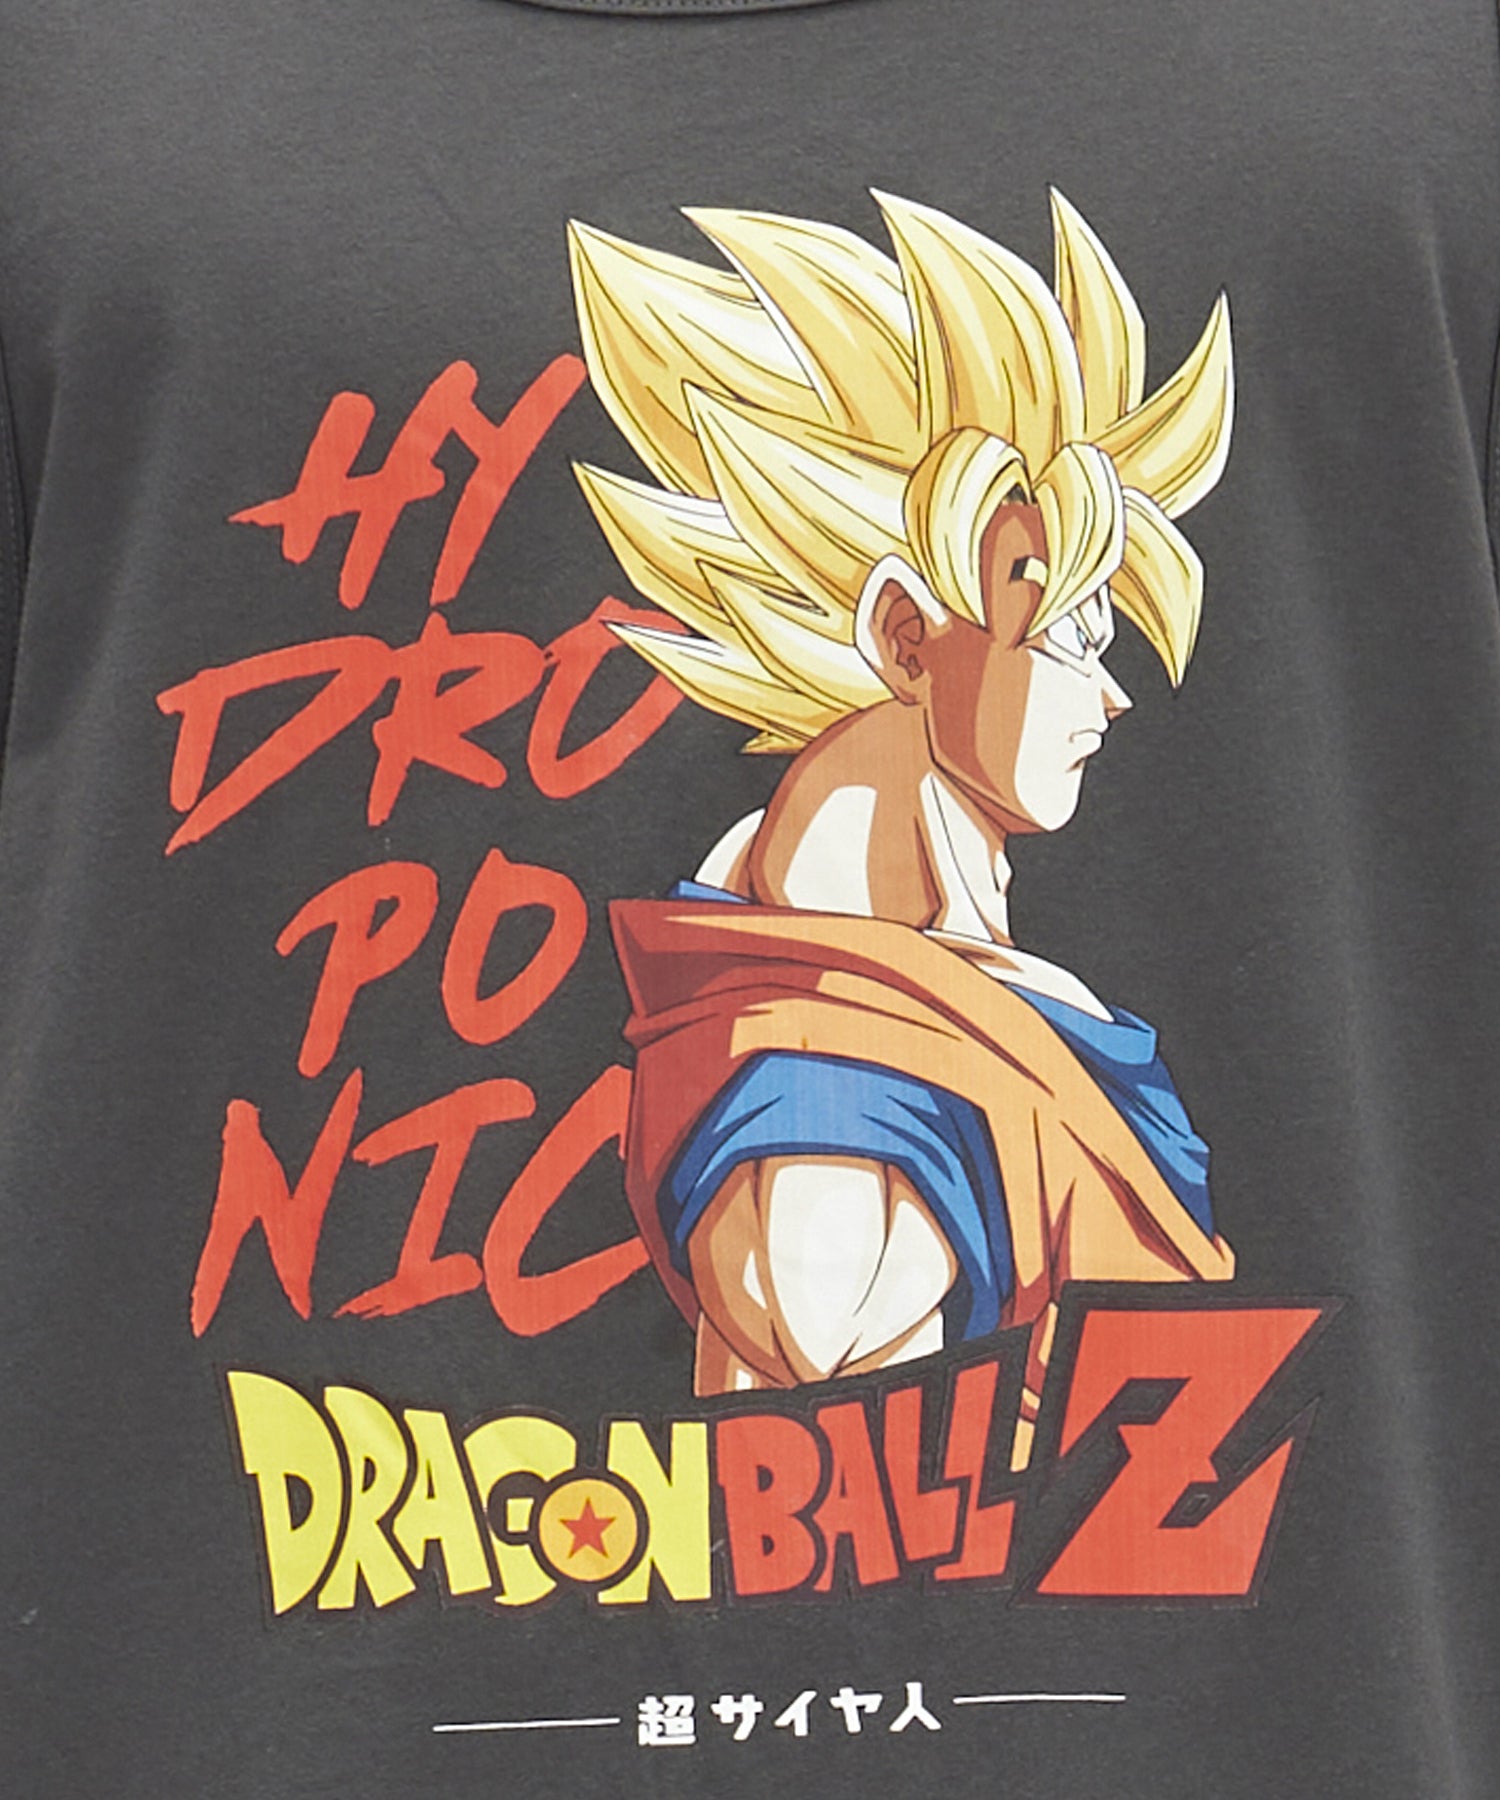 hydroponic-camiseta-de-tirantes-dragon-ball-z-super-saiyan-color-gris-serigrafía-dragon-ball-en-el-pecho-100%algodón.